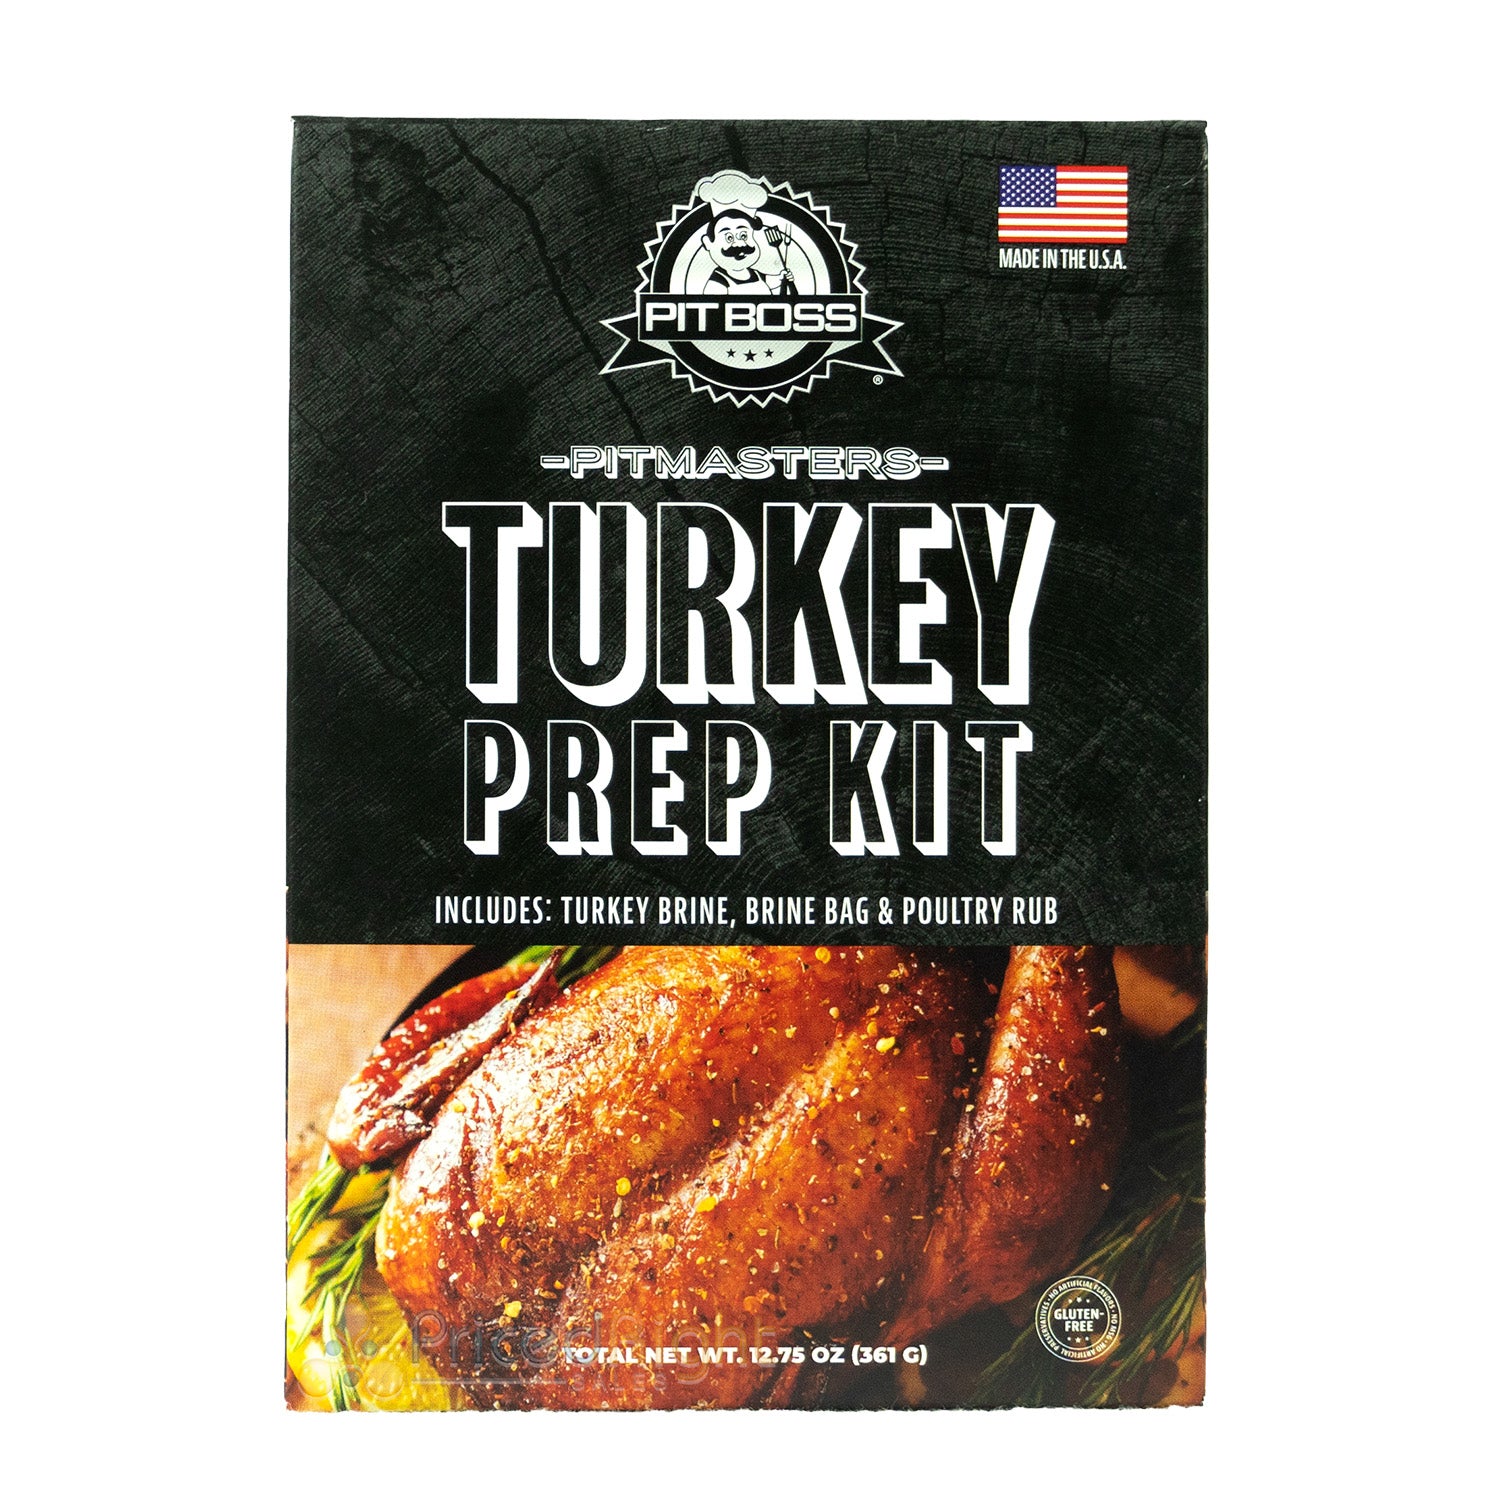 Fire & Flavor Turkey Brine Bag